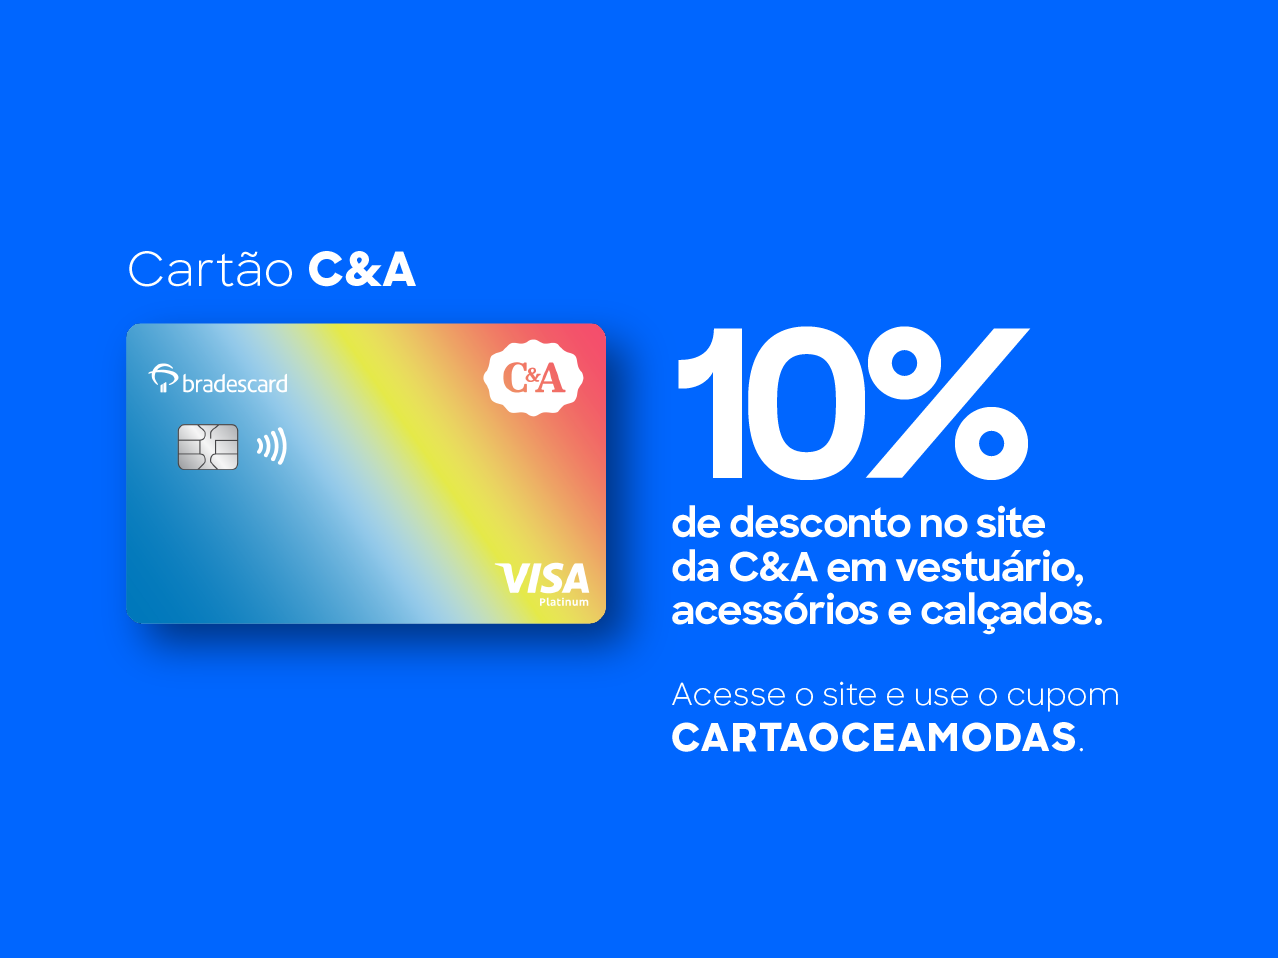 C&A Visa Platinum